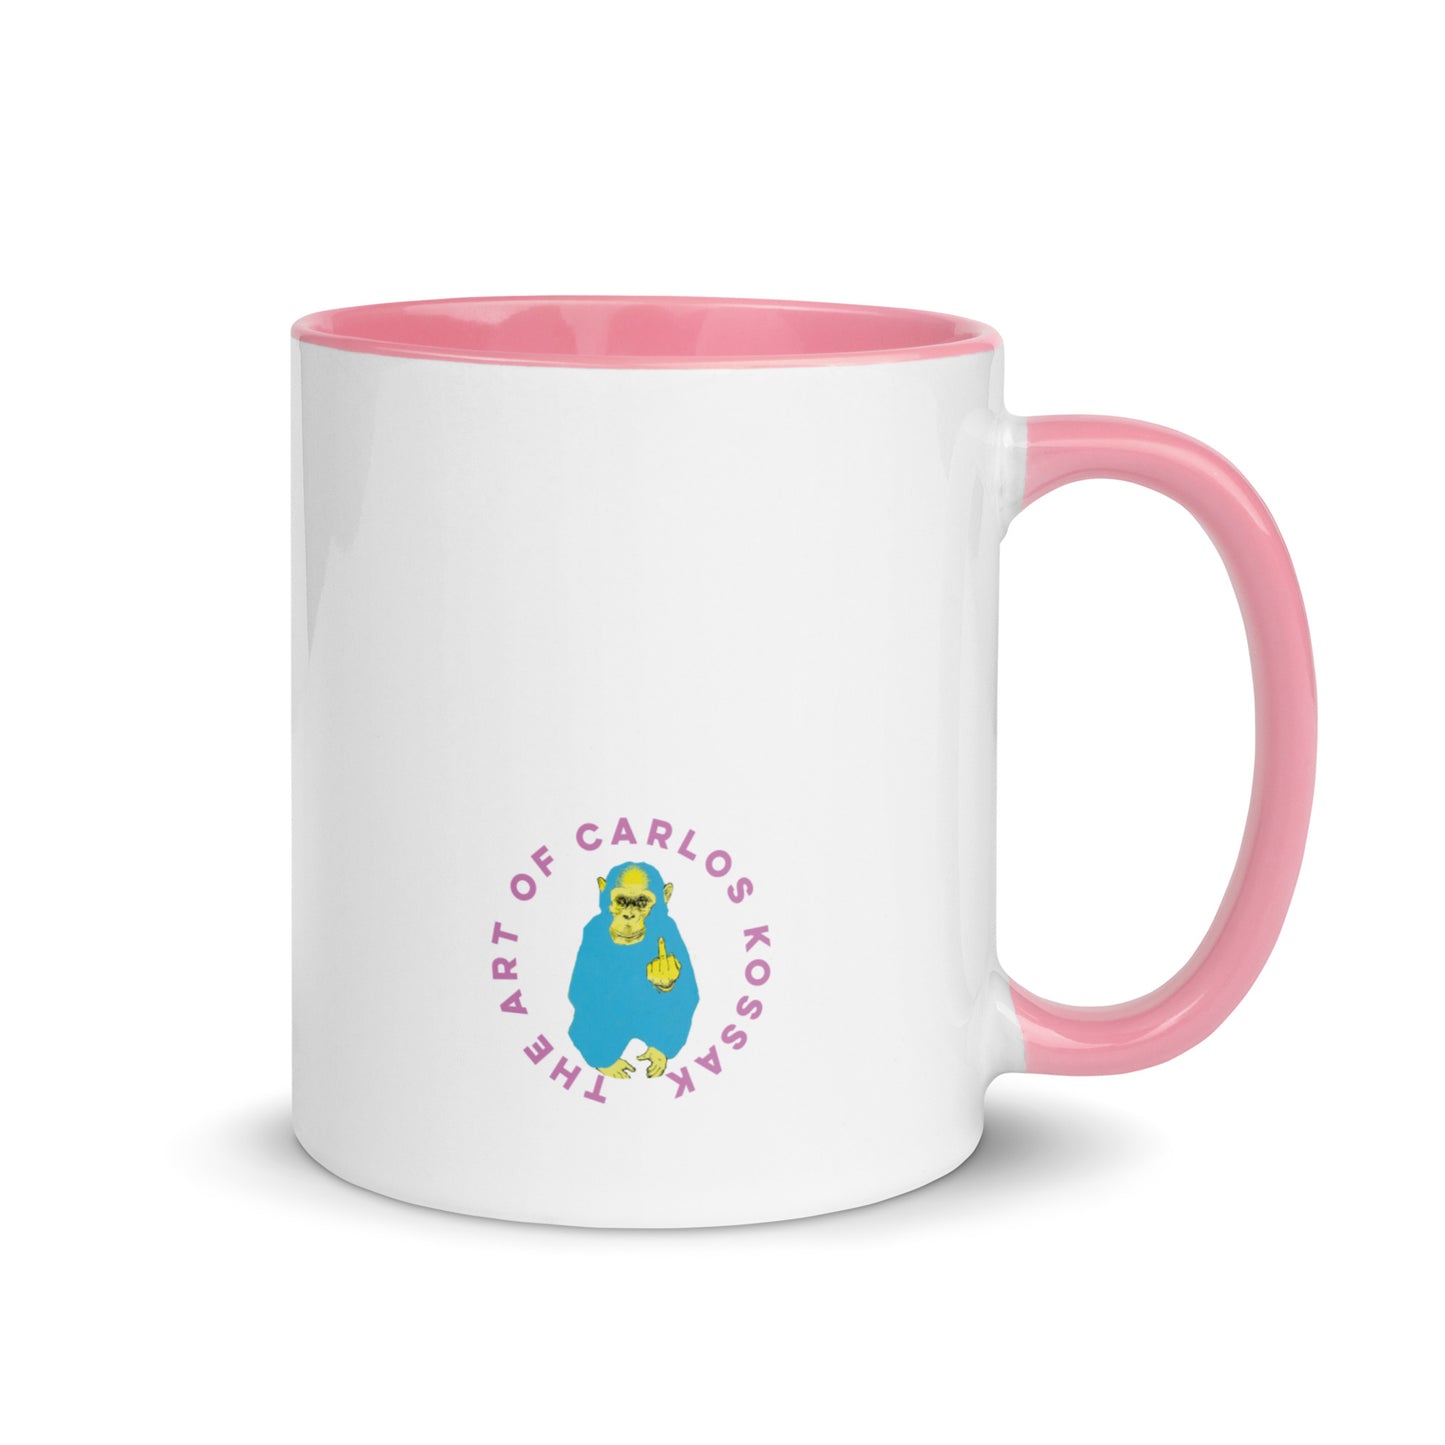 Serie Saludos Pink Mug